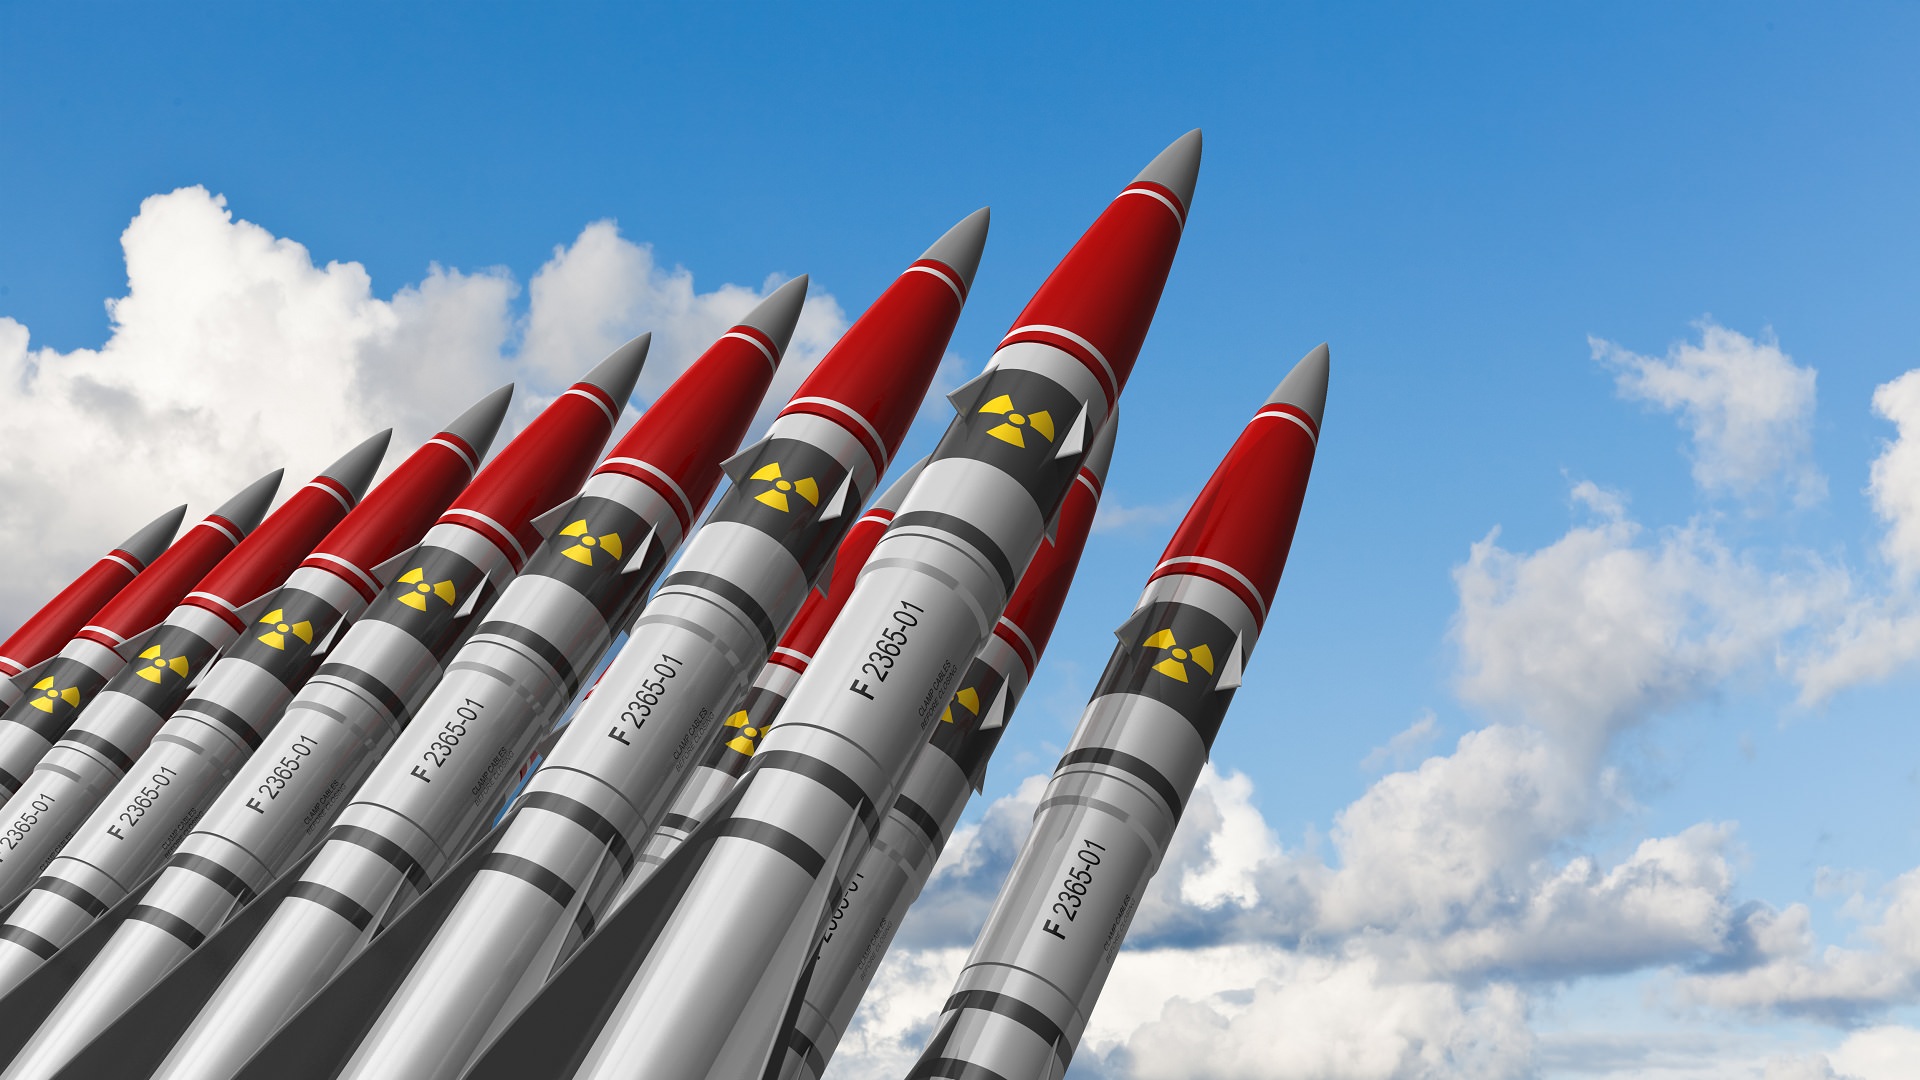 استراتيجية الدفاع الصاروخي الأمريكية: دلالات دولية وانعكاسات إقليمية